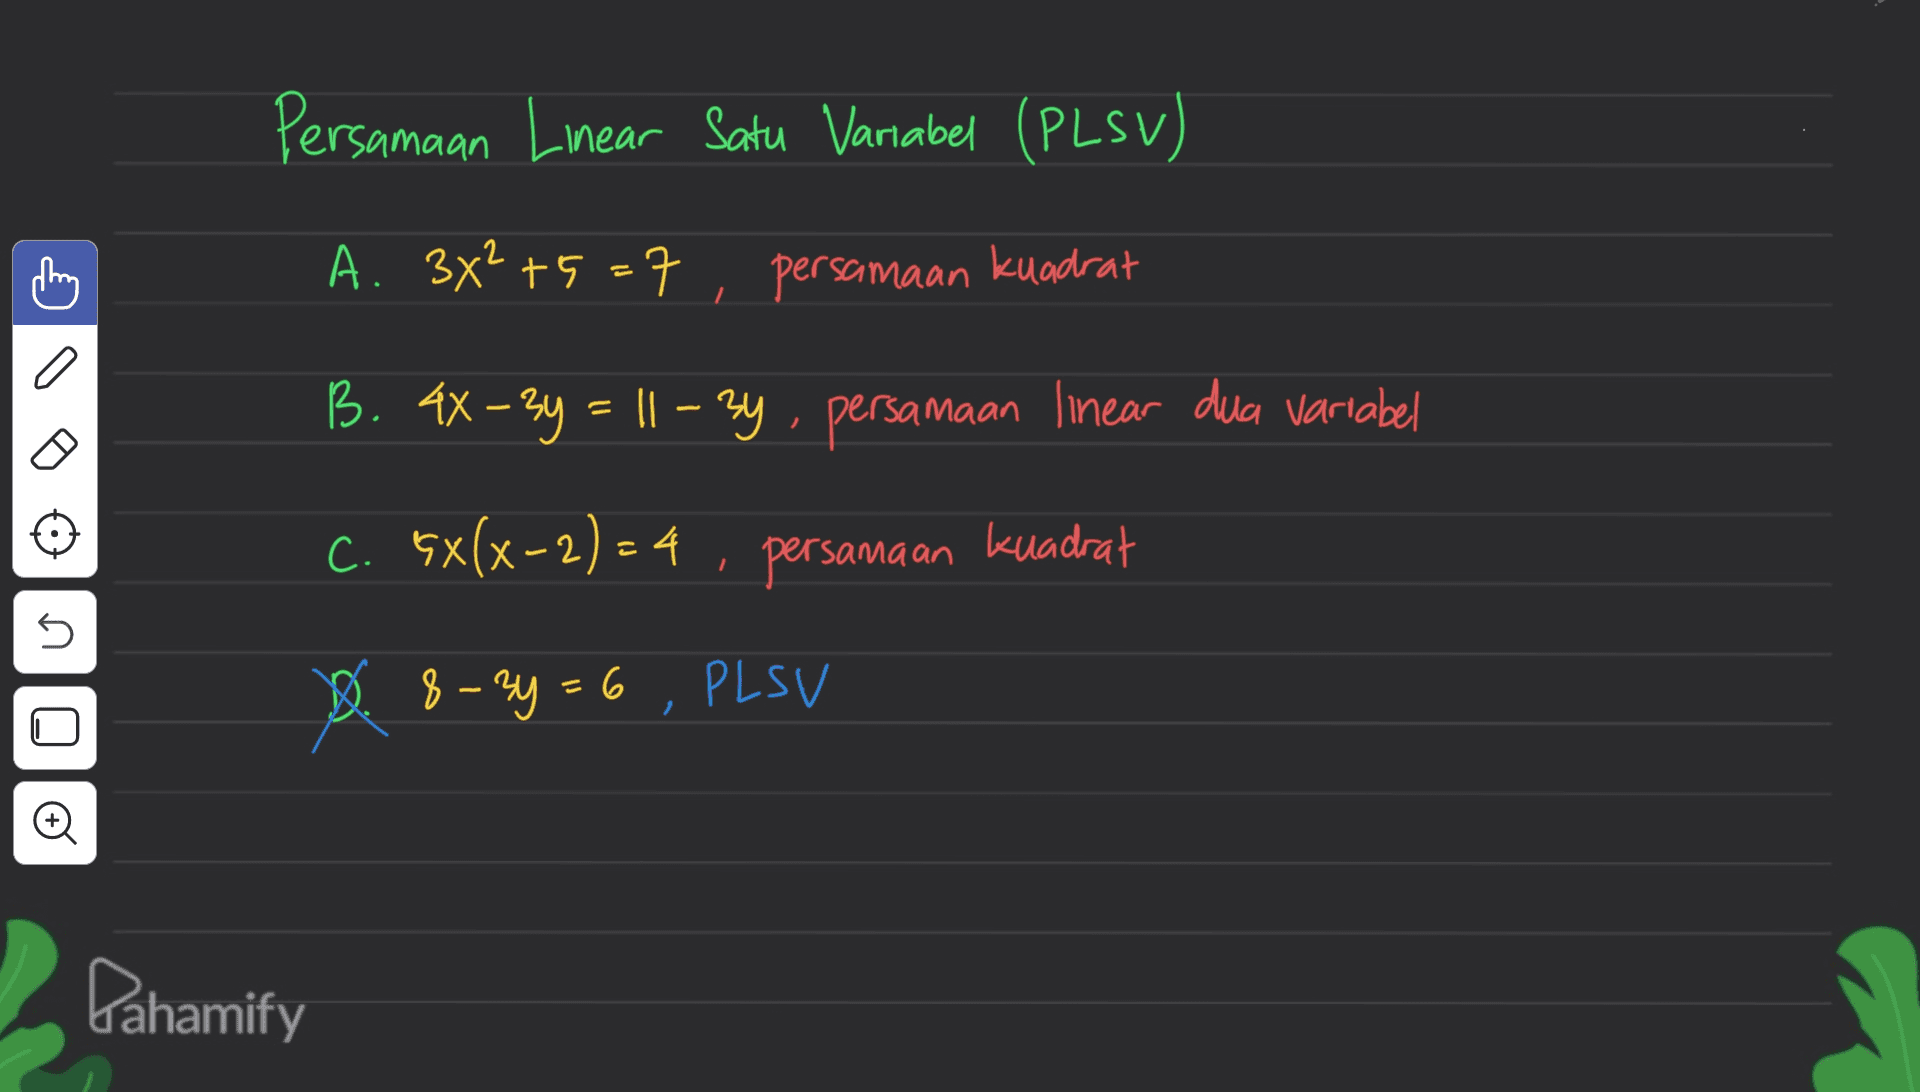 Persamaan Linear Satu Variabel (PLSV) A. 3x² +5=7 persamaan kuadrat a B. 4x – 2y = 11 – 2y, persamaan linear dua variabel C. 5x(x-2) – 4 , persamaan kuadrat (2)4 ni - D. $ - 2y = 6 , PLSV 8 Đ Pahamify 